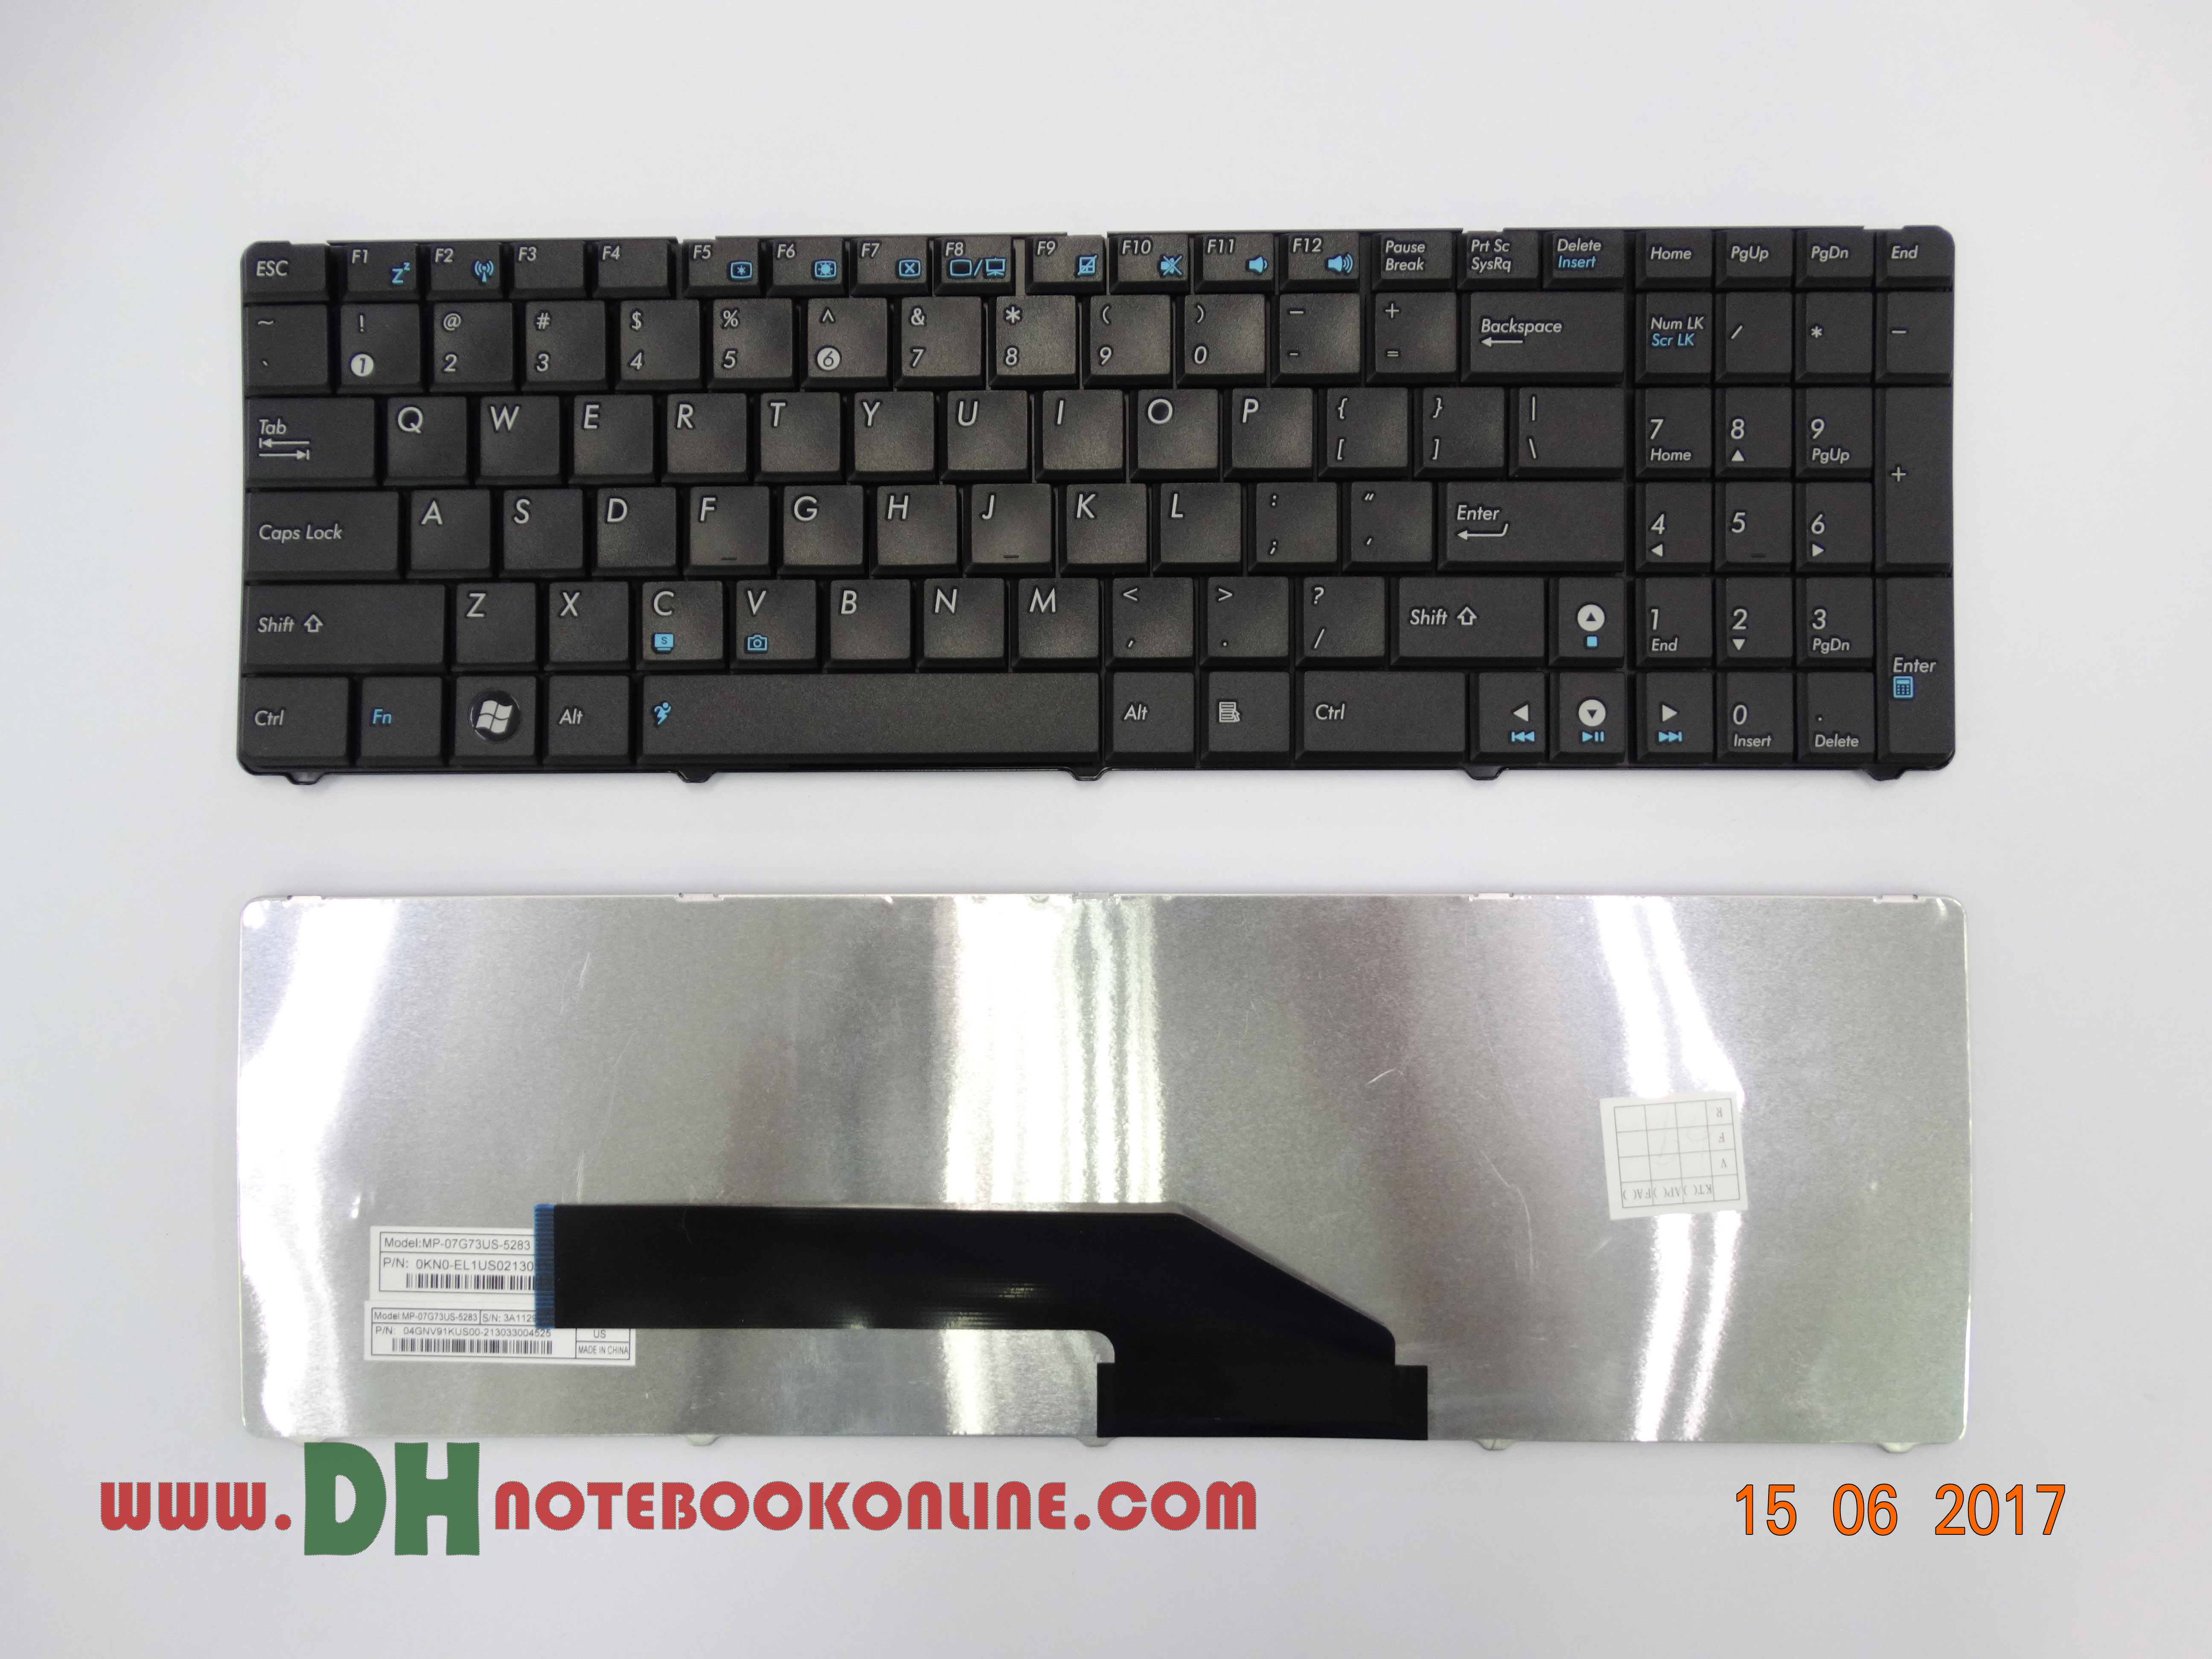 Keyboard Notebook Asus K50 K50AB K50IE K50ID K50in K61 X5DI K70 K70IJ X5DC